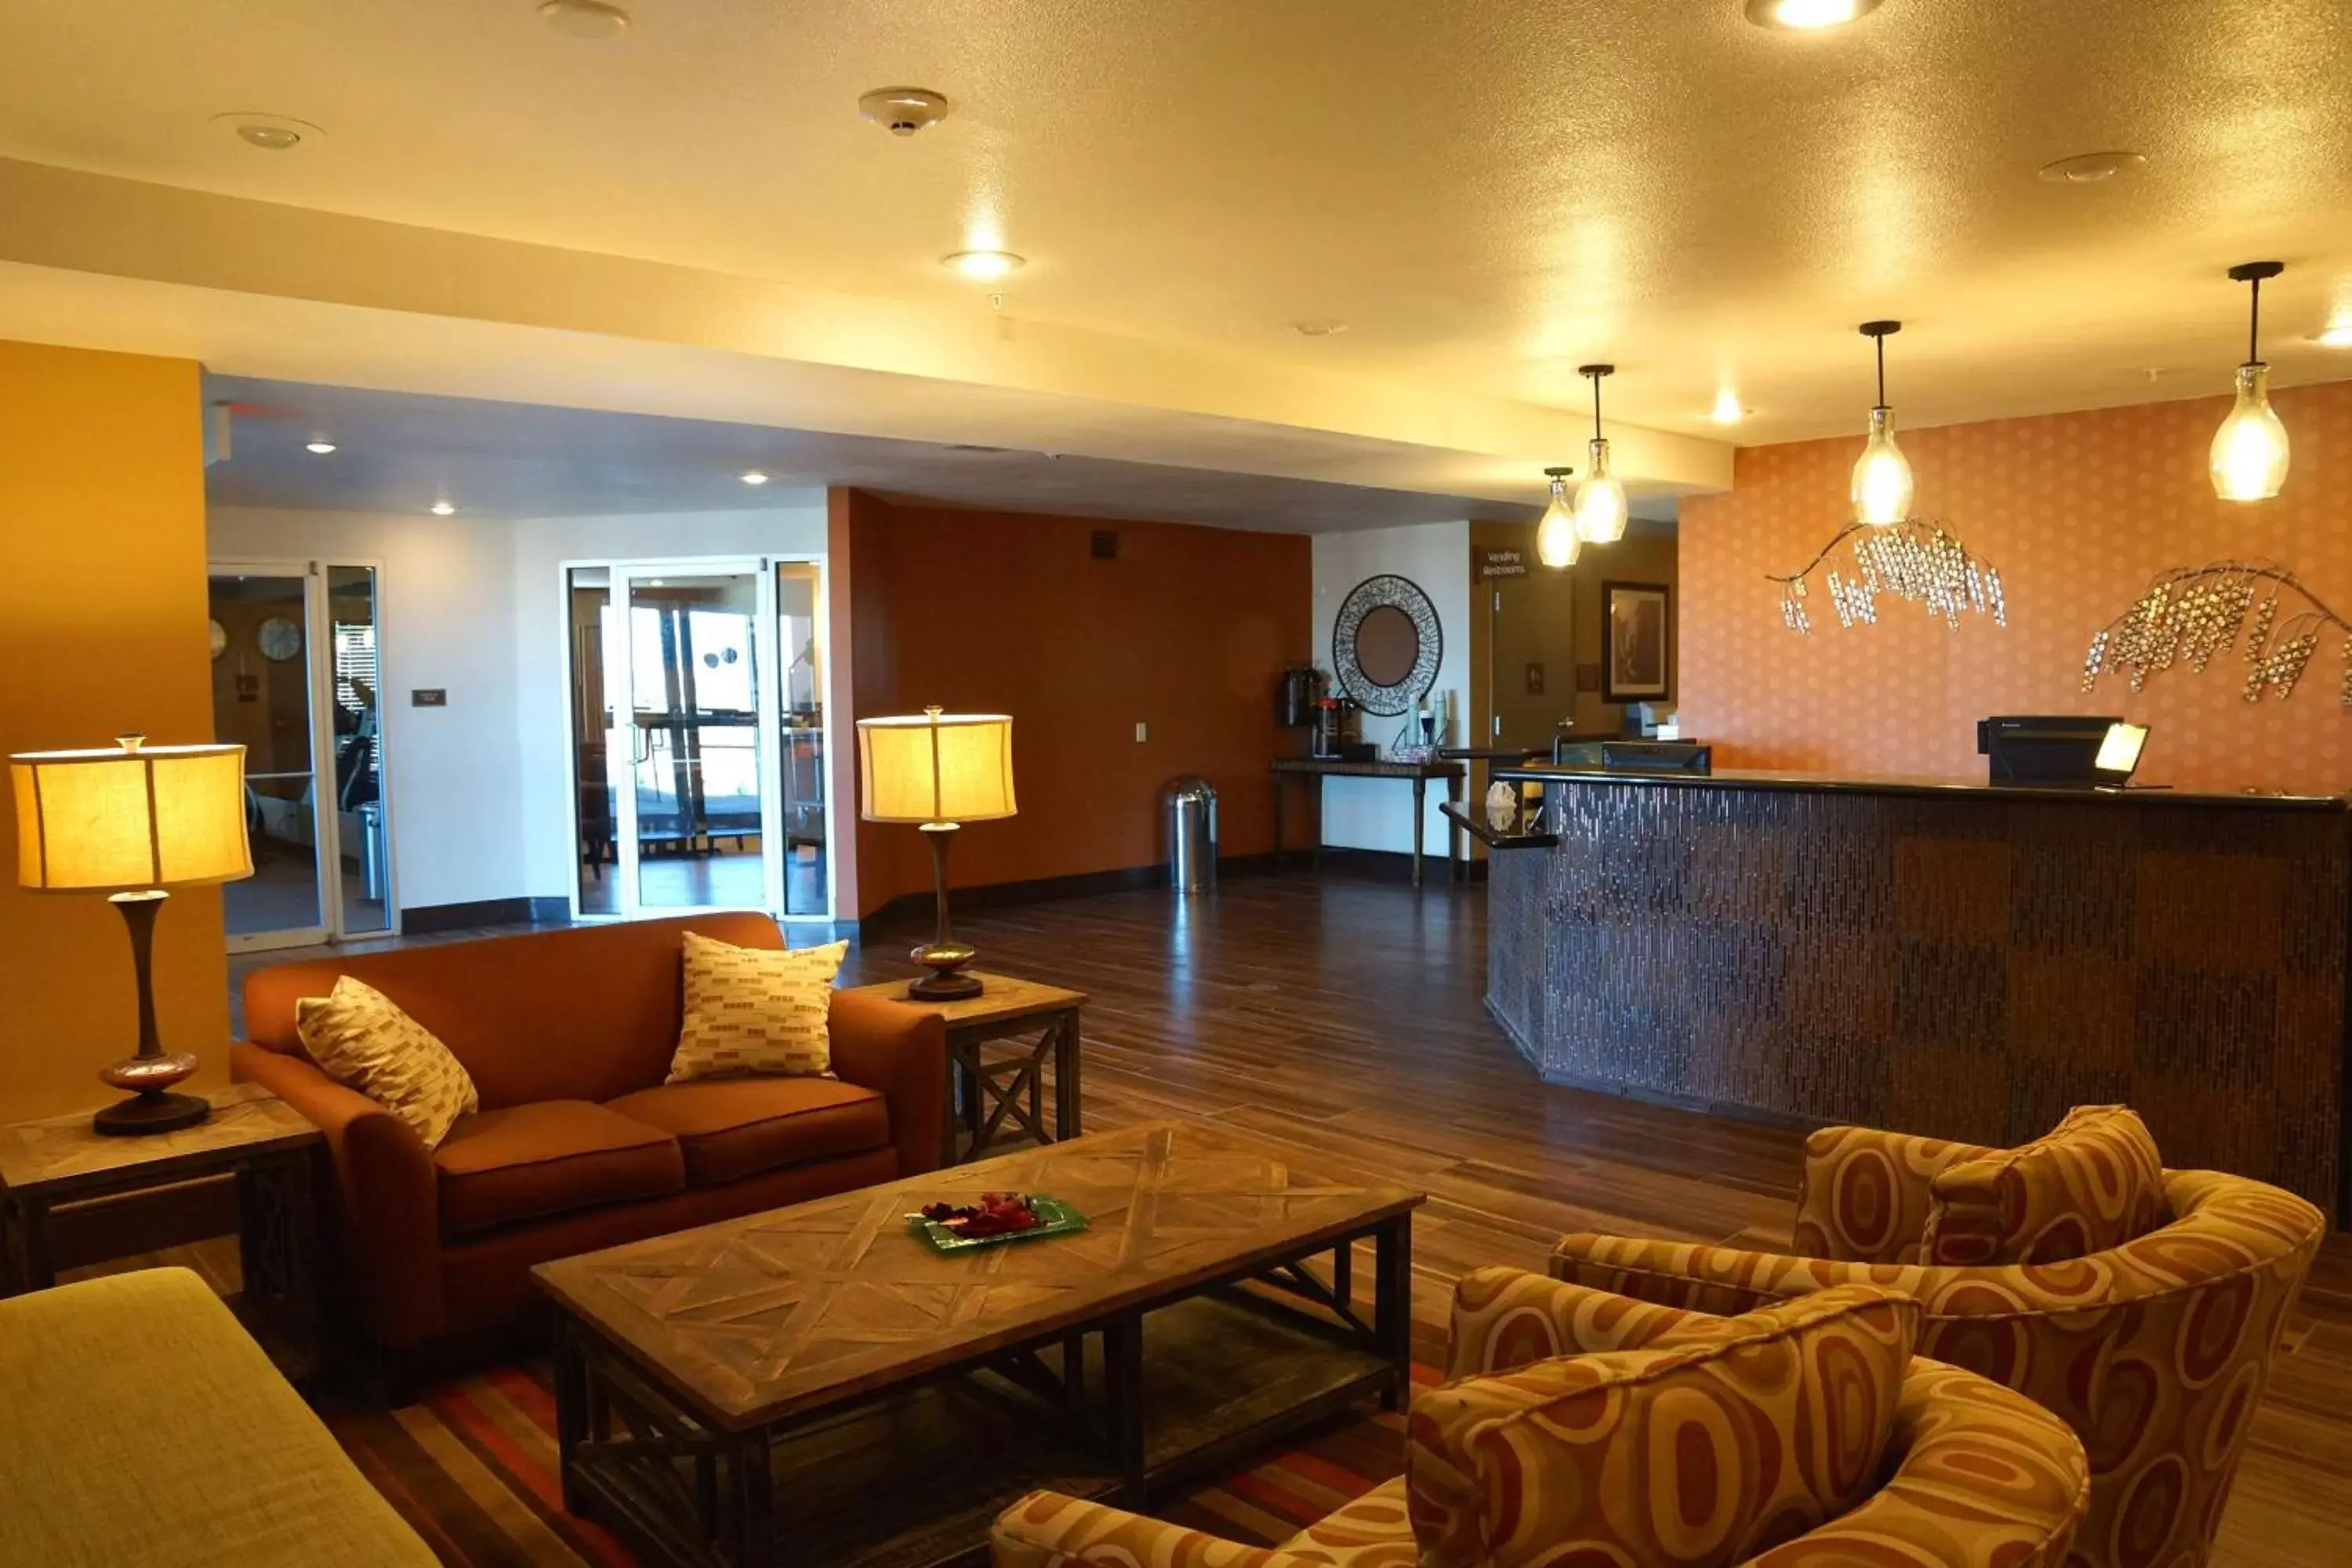 Lobby or reception, Lobby/Reception in Best Western East El Paso Inn